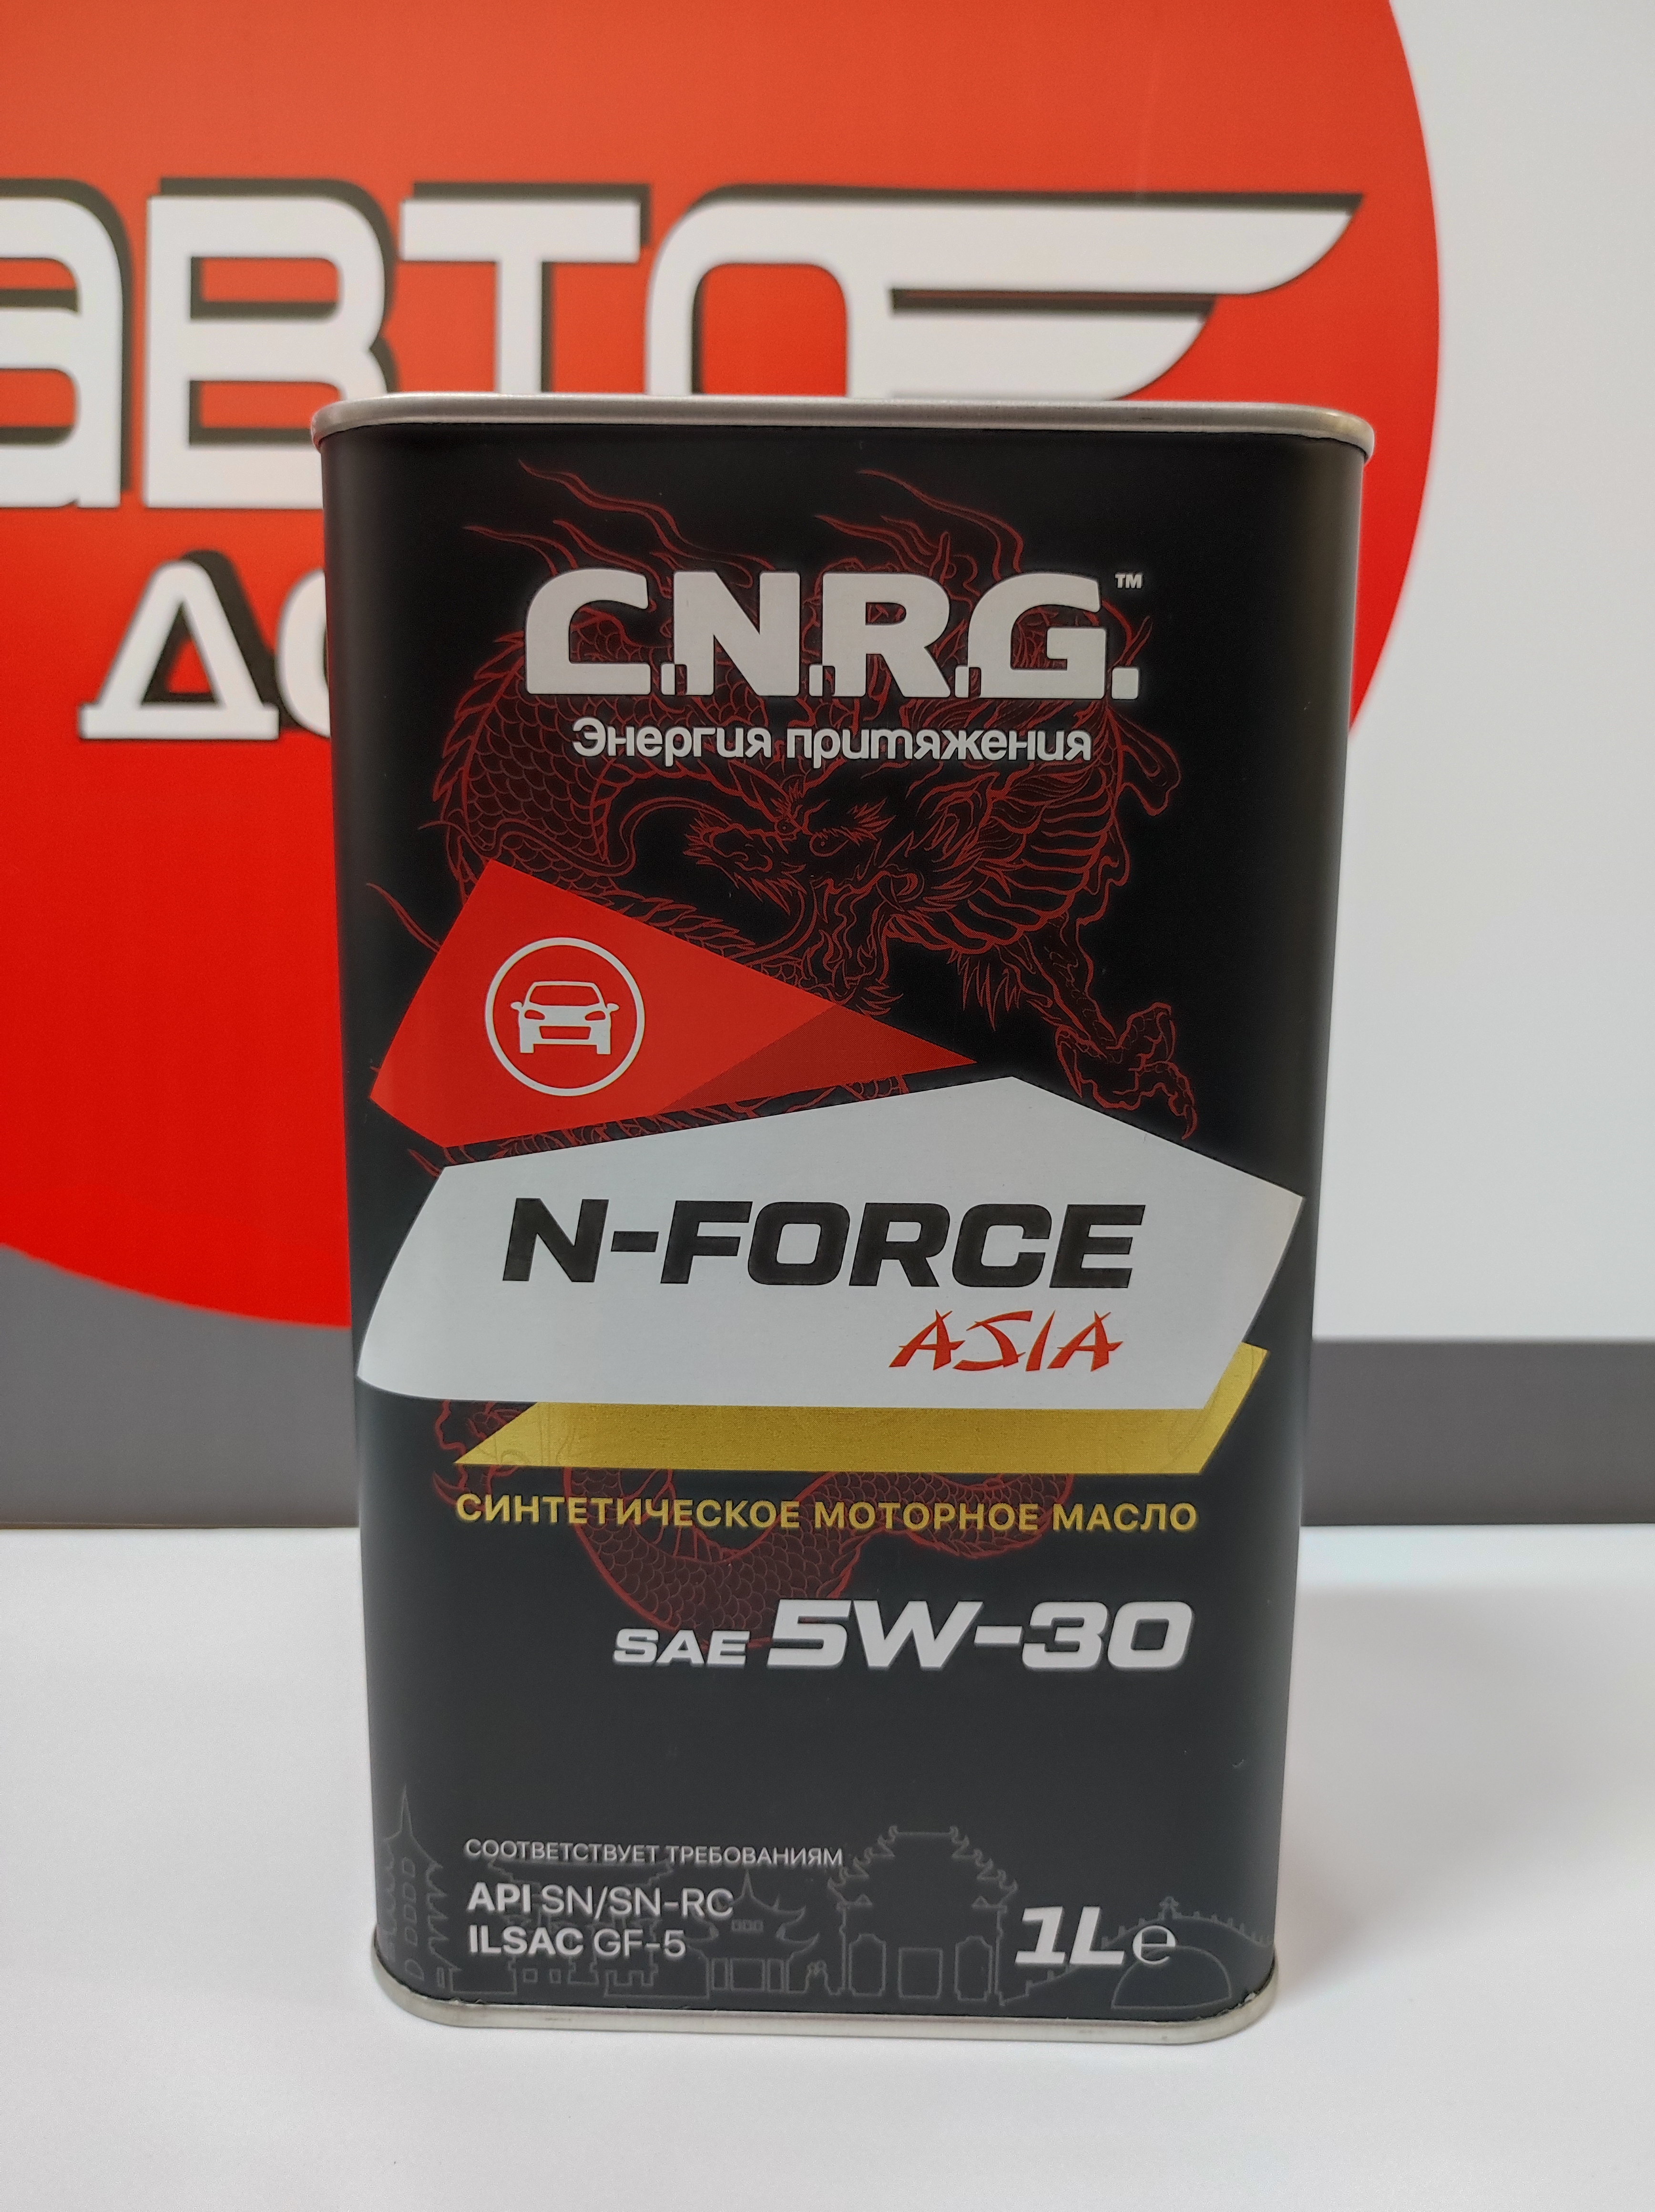 Asia force. Масло моторное c.n.r.g. n-Force Asia 5w-30. CNRG Asia 5w30. CNRG N-stroke 5w30 синтетика. Моторное масло FQ 5w30 отзывы.